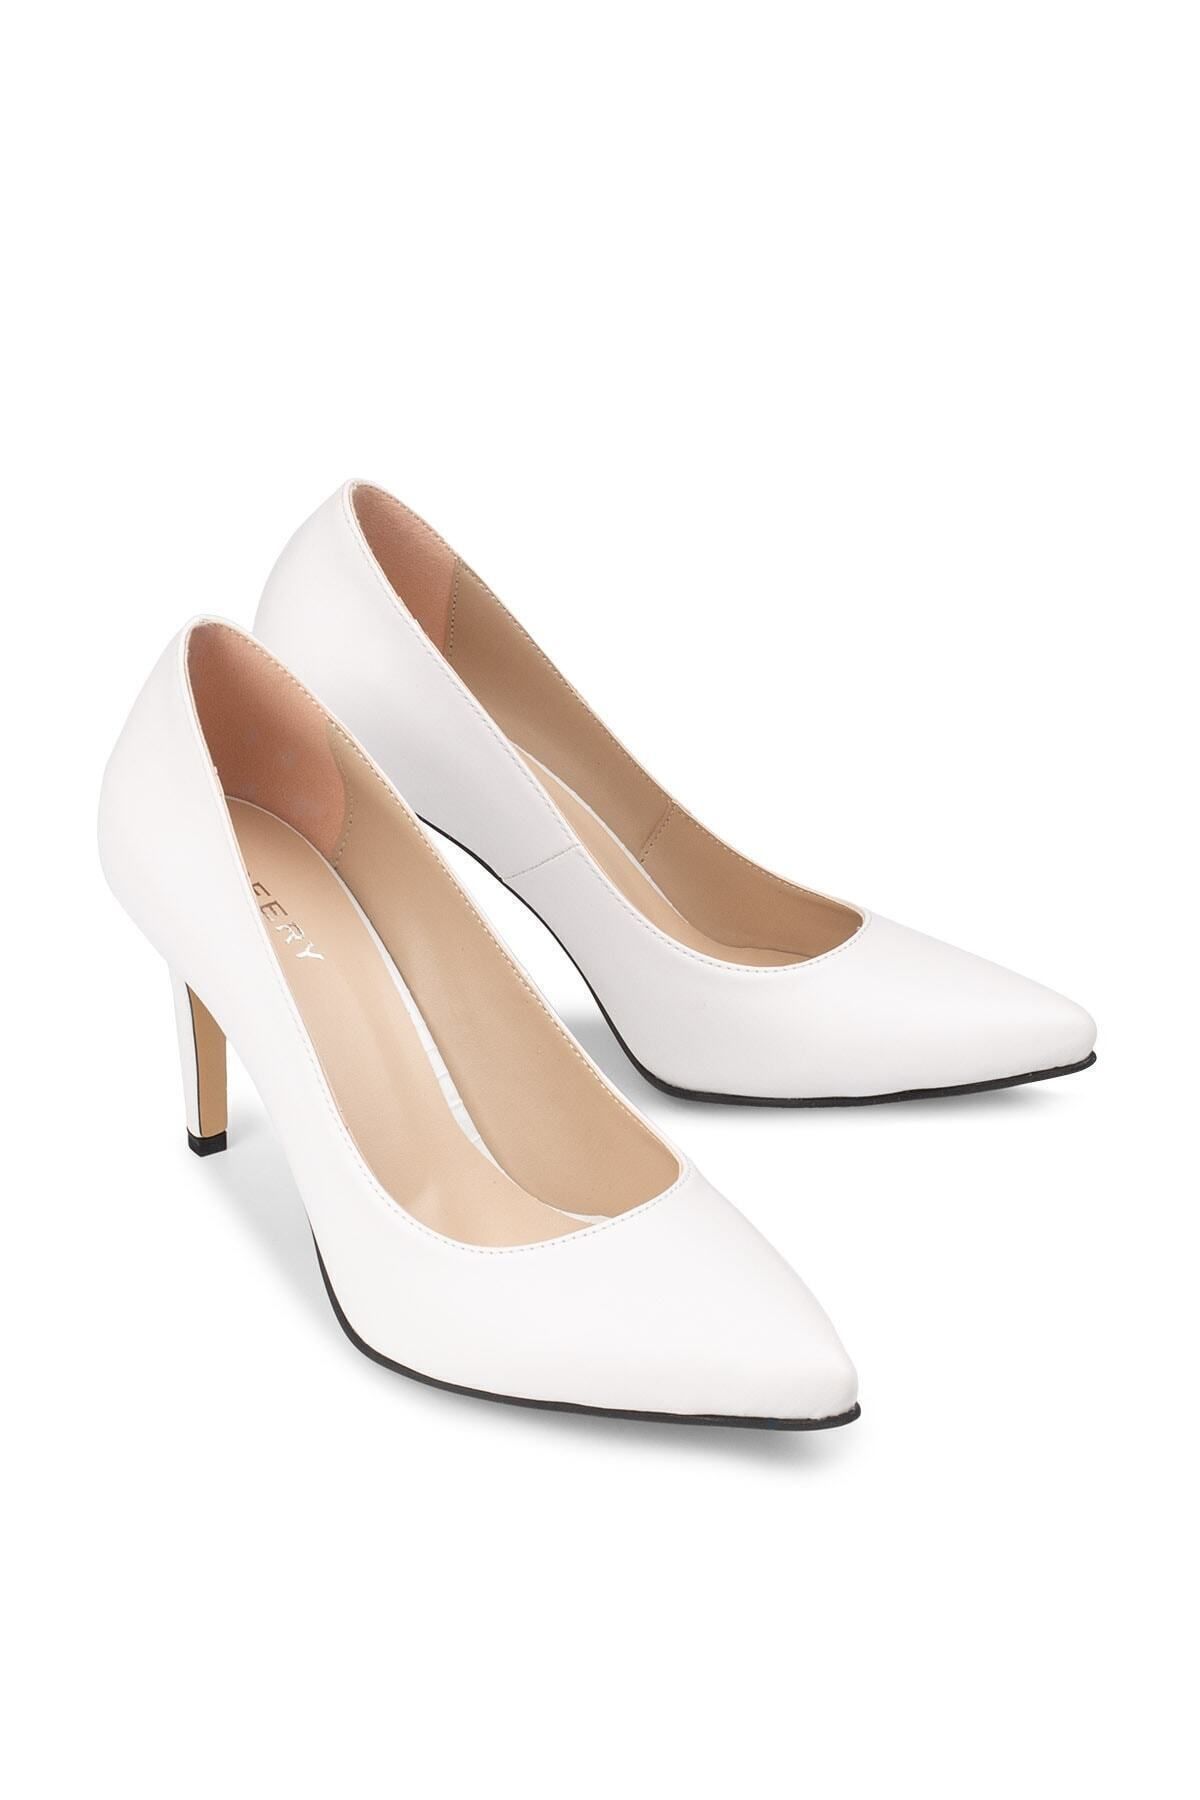 Deery Beyaz Kadın  Klasik Topuklu Ayakkabı 02029ZBYZM01